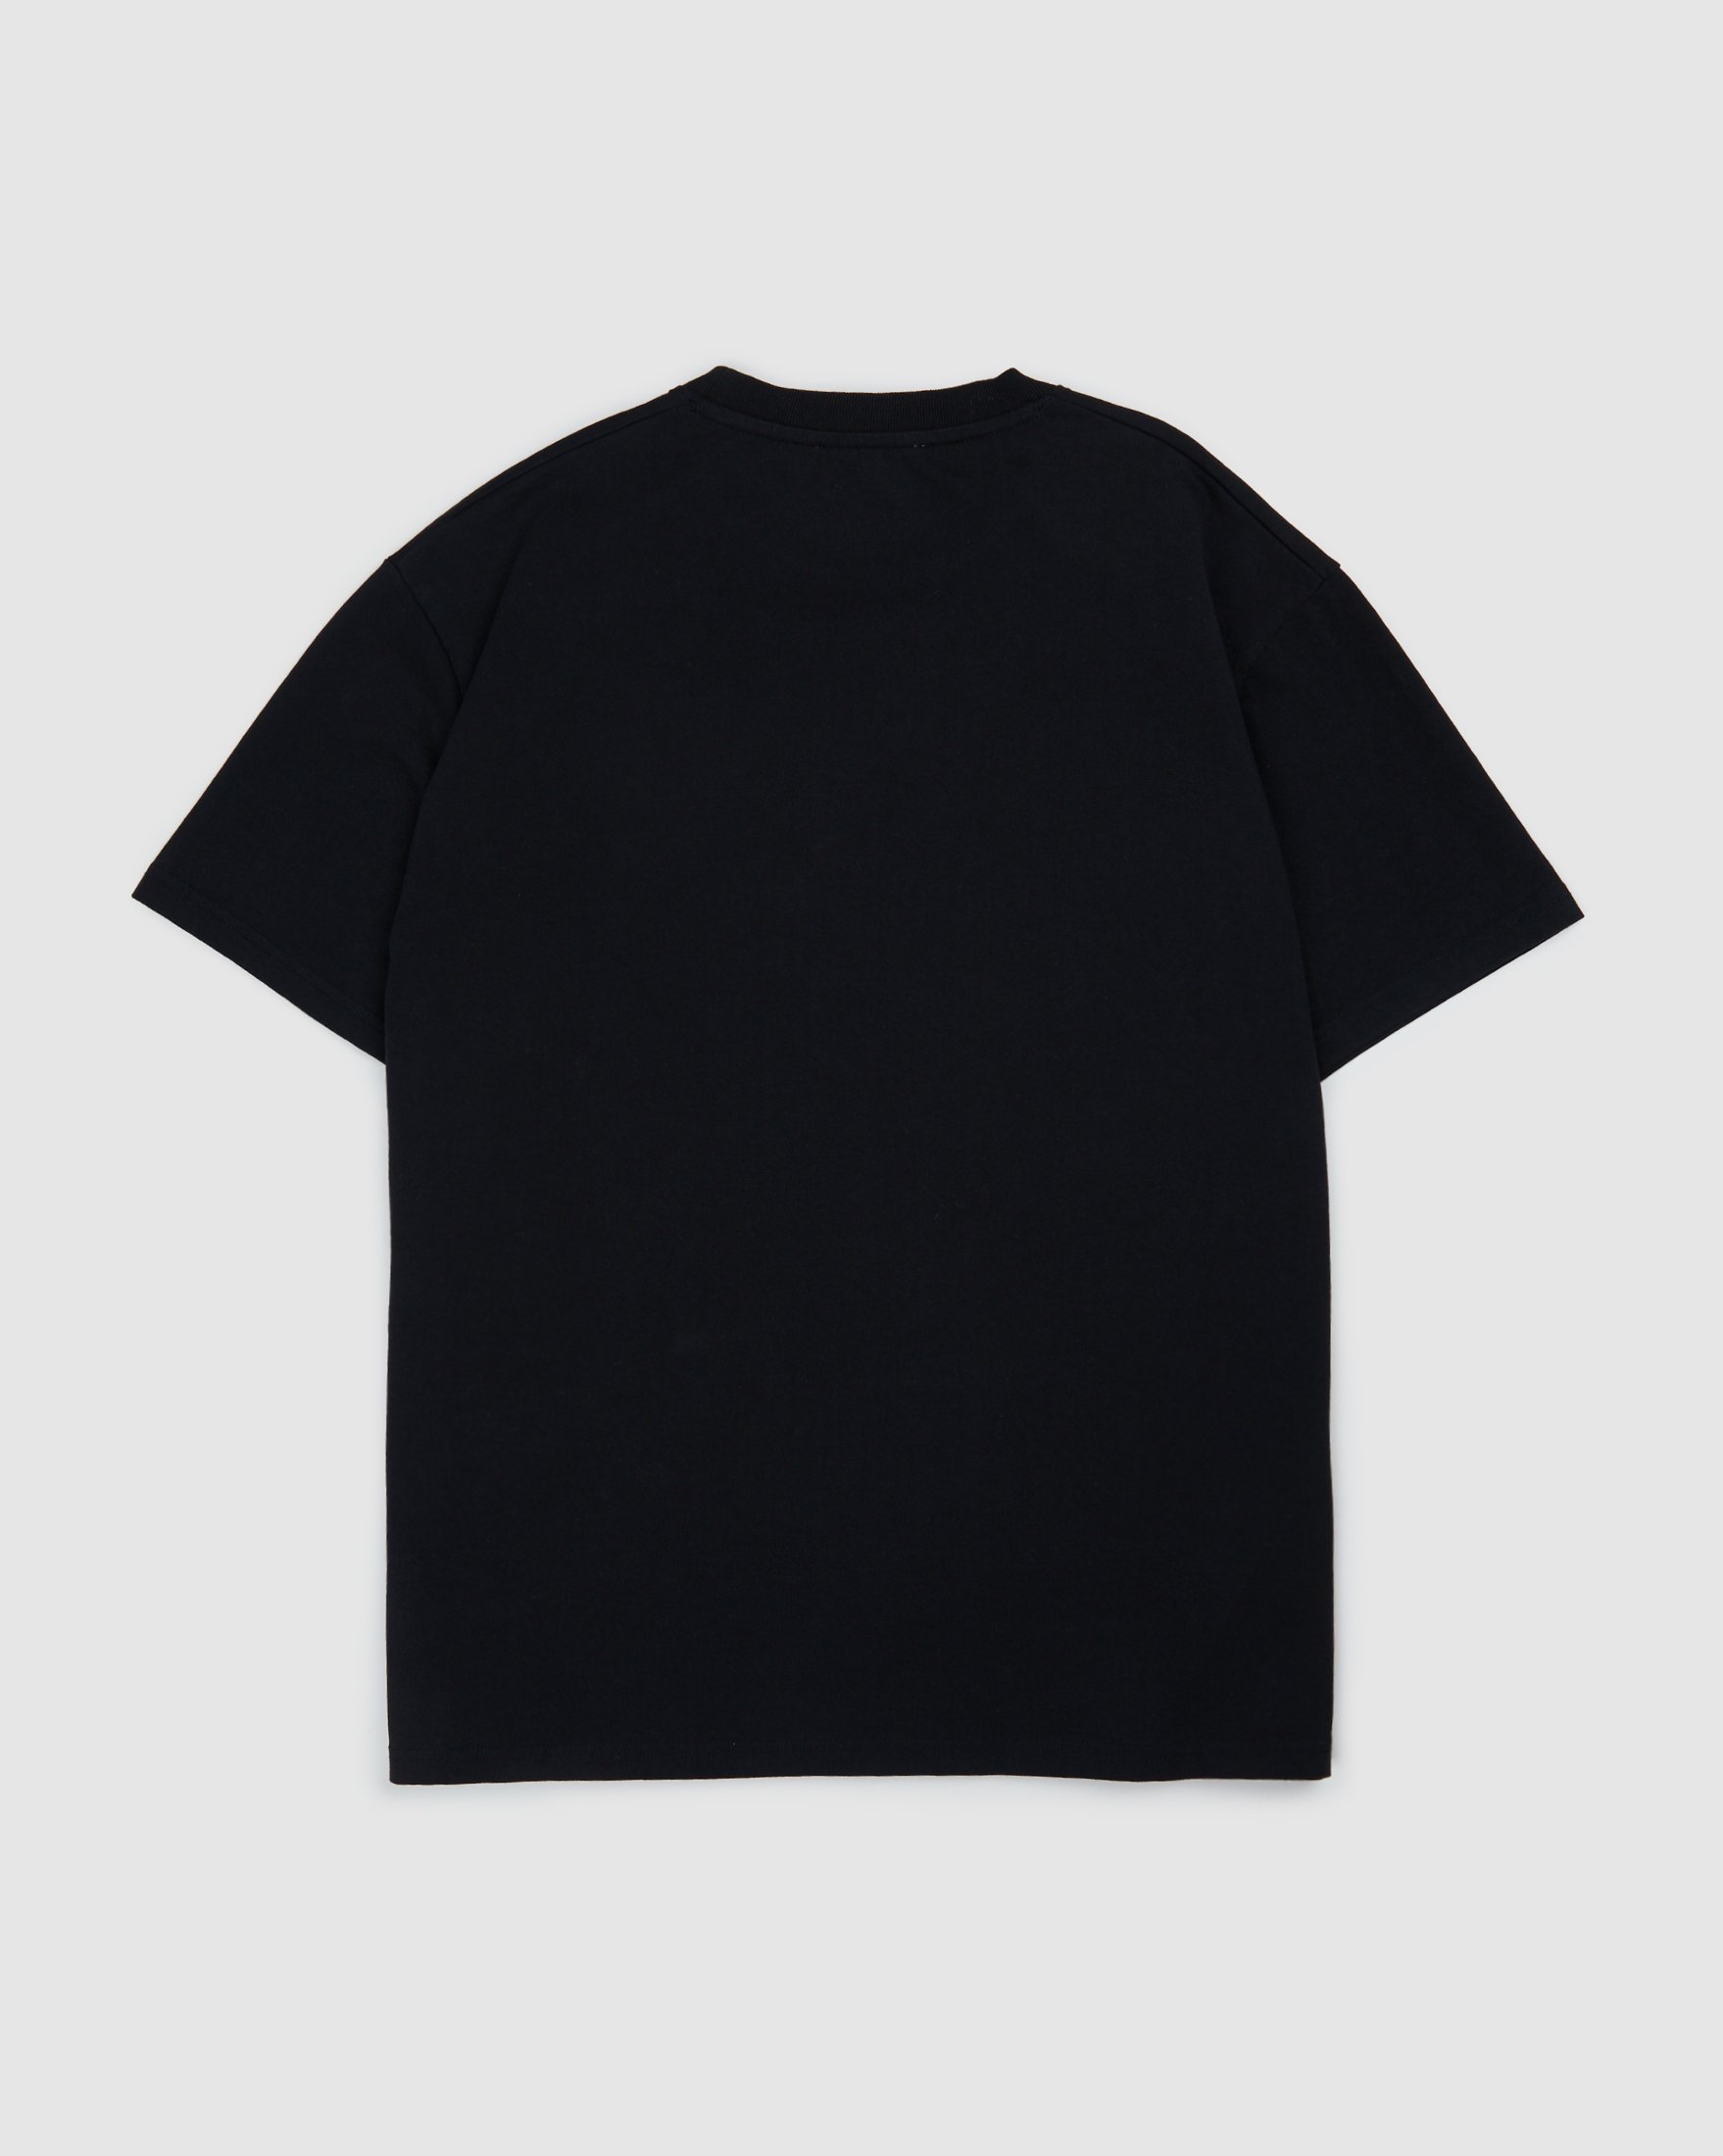 Colette Mon Amour - Heart T-Shirt Black - Clothing - Black - Image 2